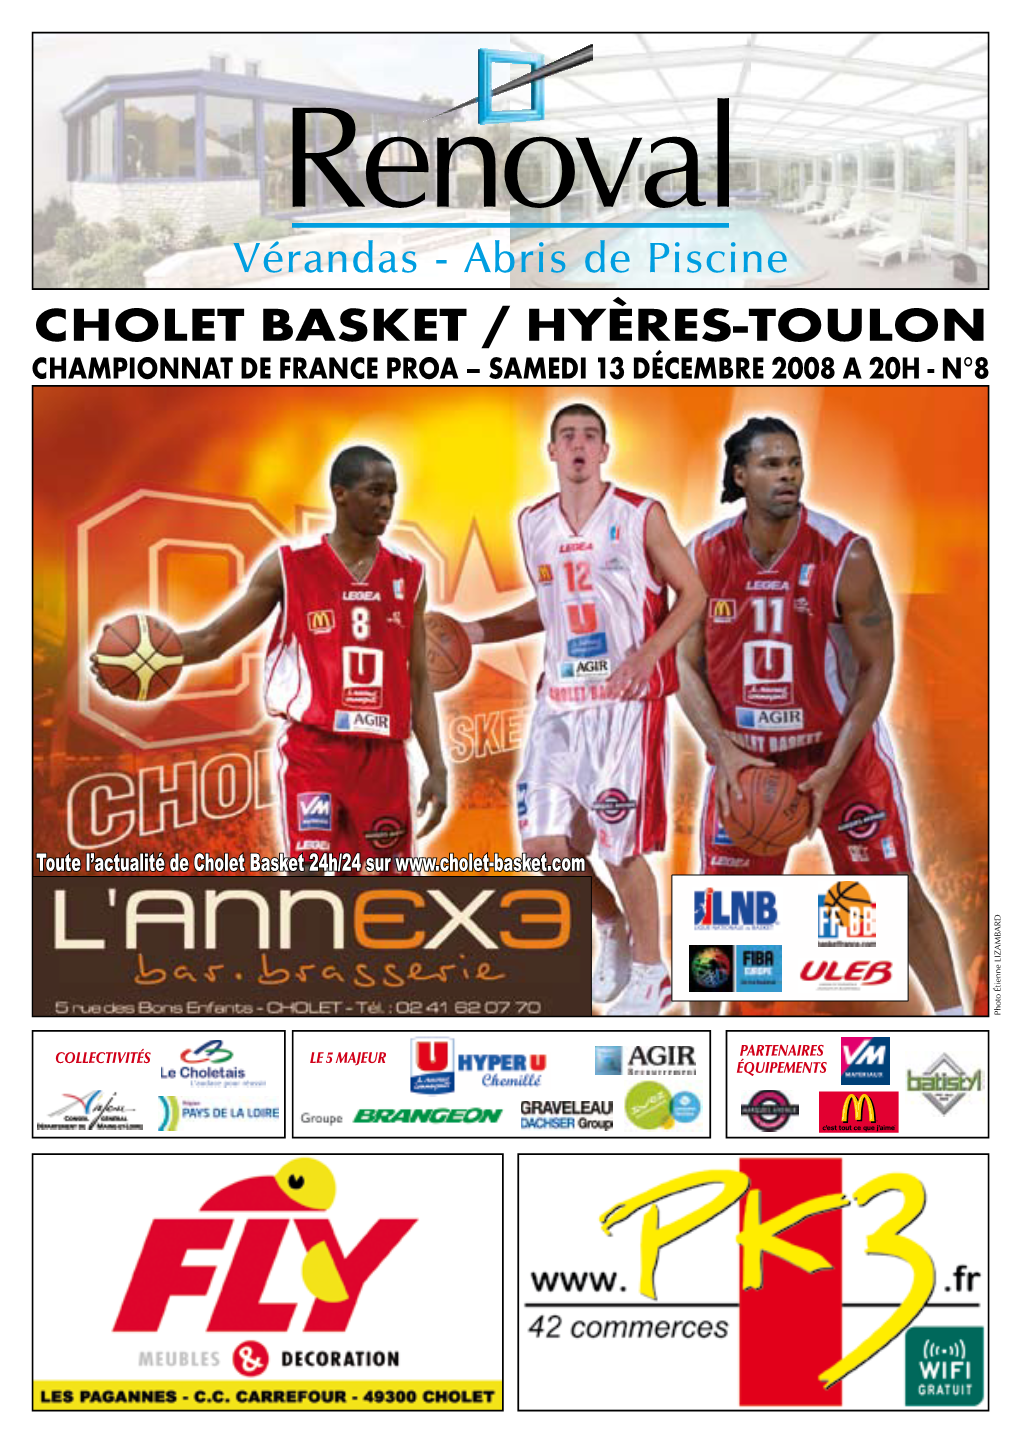 Cholet Basket / Hyères-Toulon Championnat De France Proa – Samedi 13 Décembre 2008 a 20H - N°8